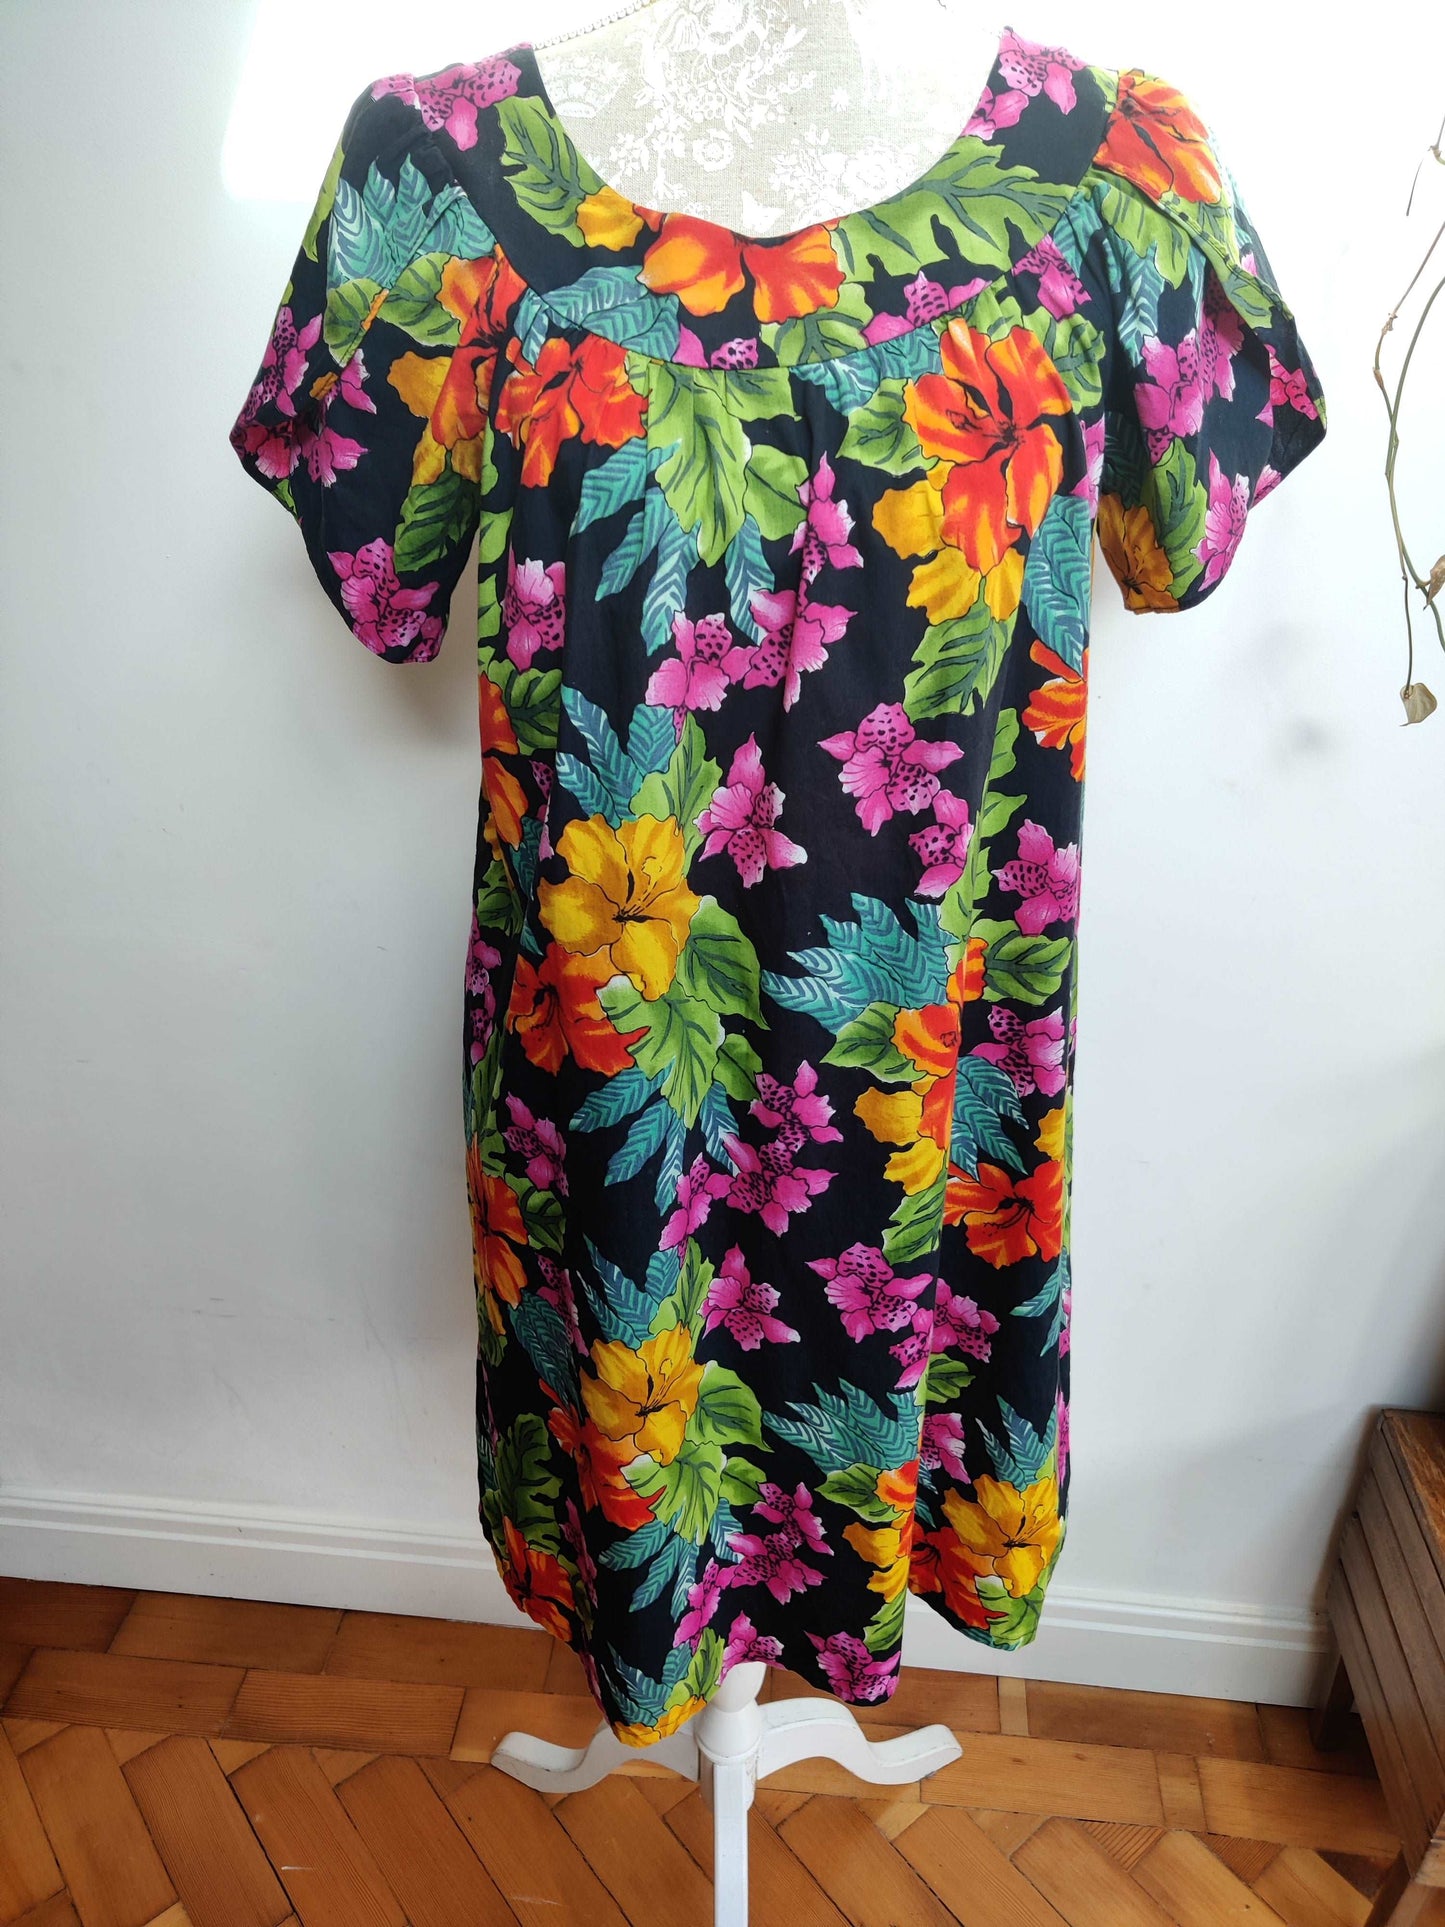 Fun vibrant hawaiian dress. size medium.